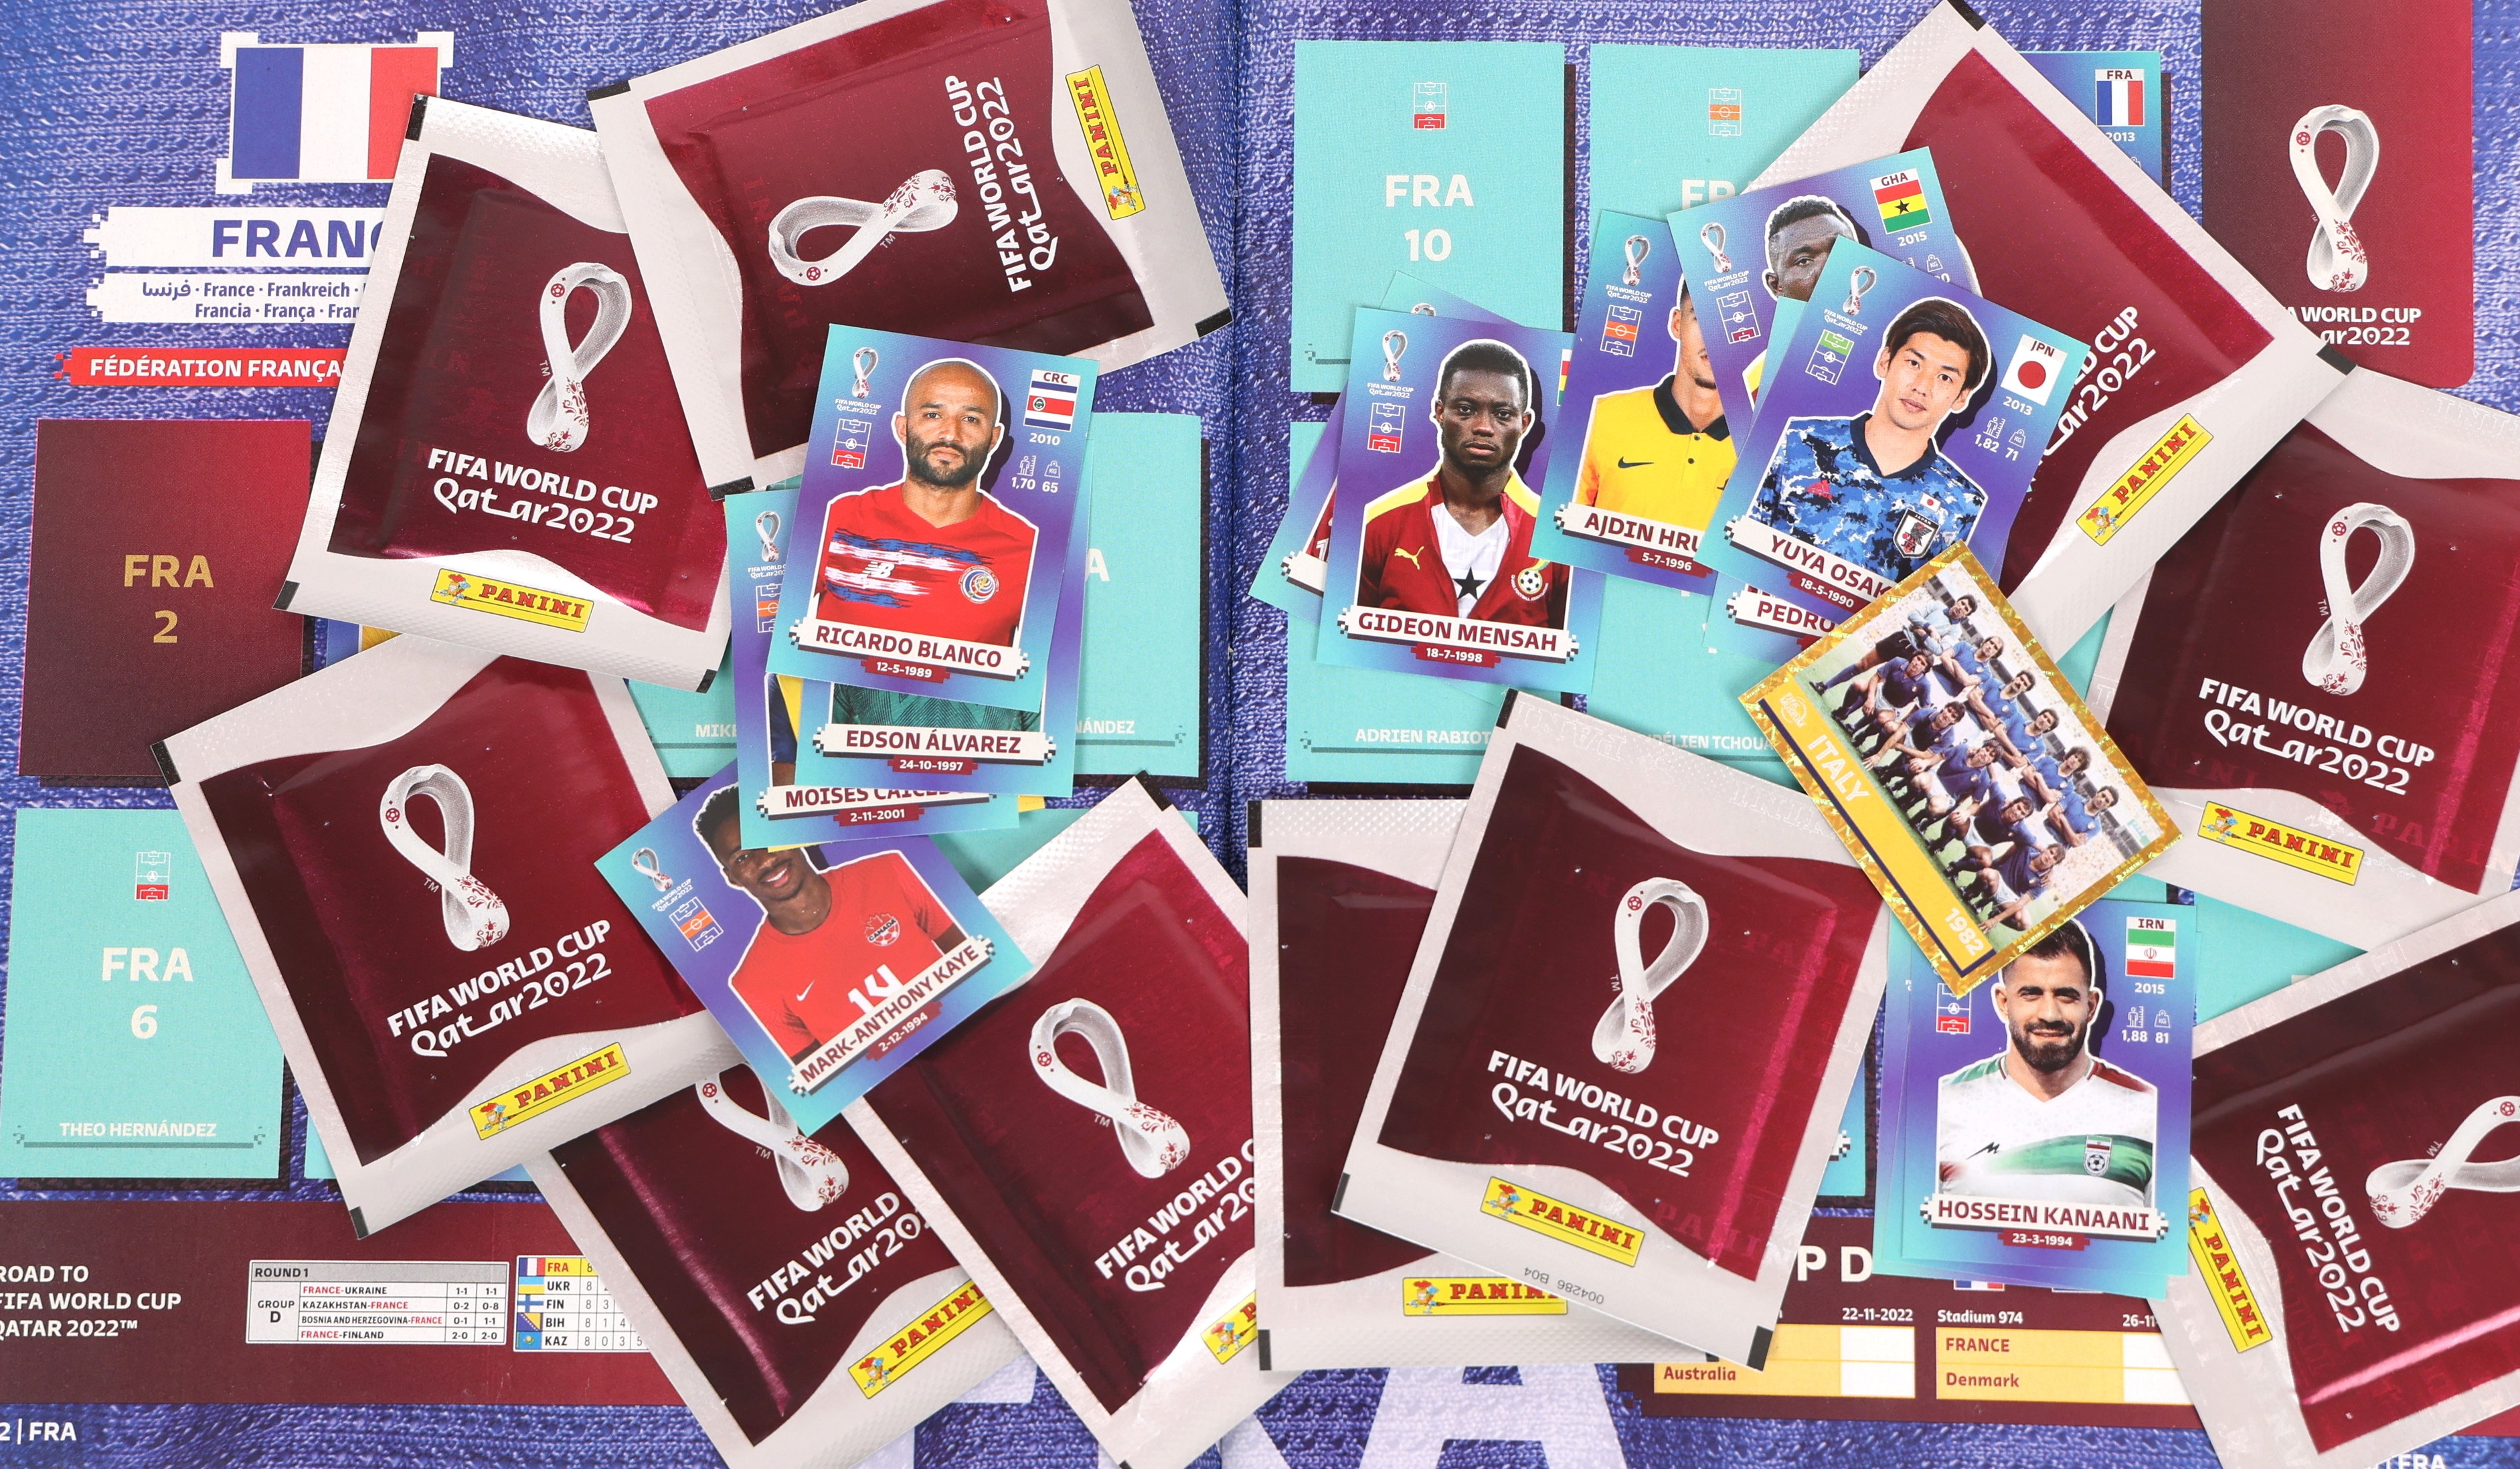 Cartes Panini : comptez plus de 1000 euros pour compléter l'album de la  Coupe du monde au Qatar - Le Parisien